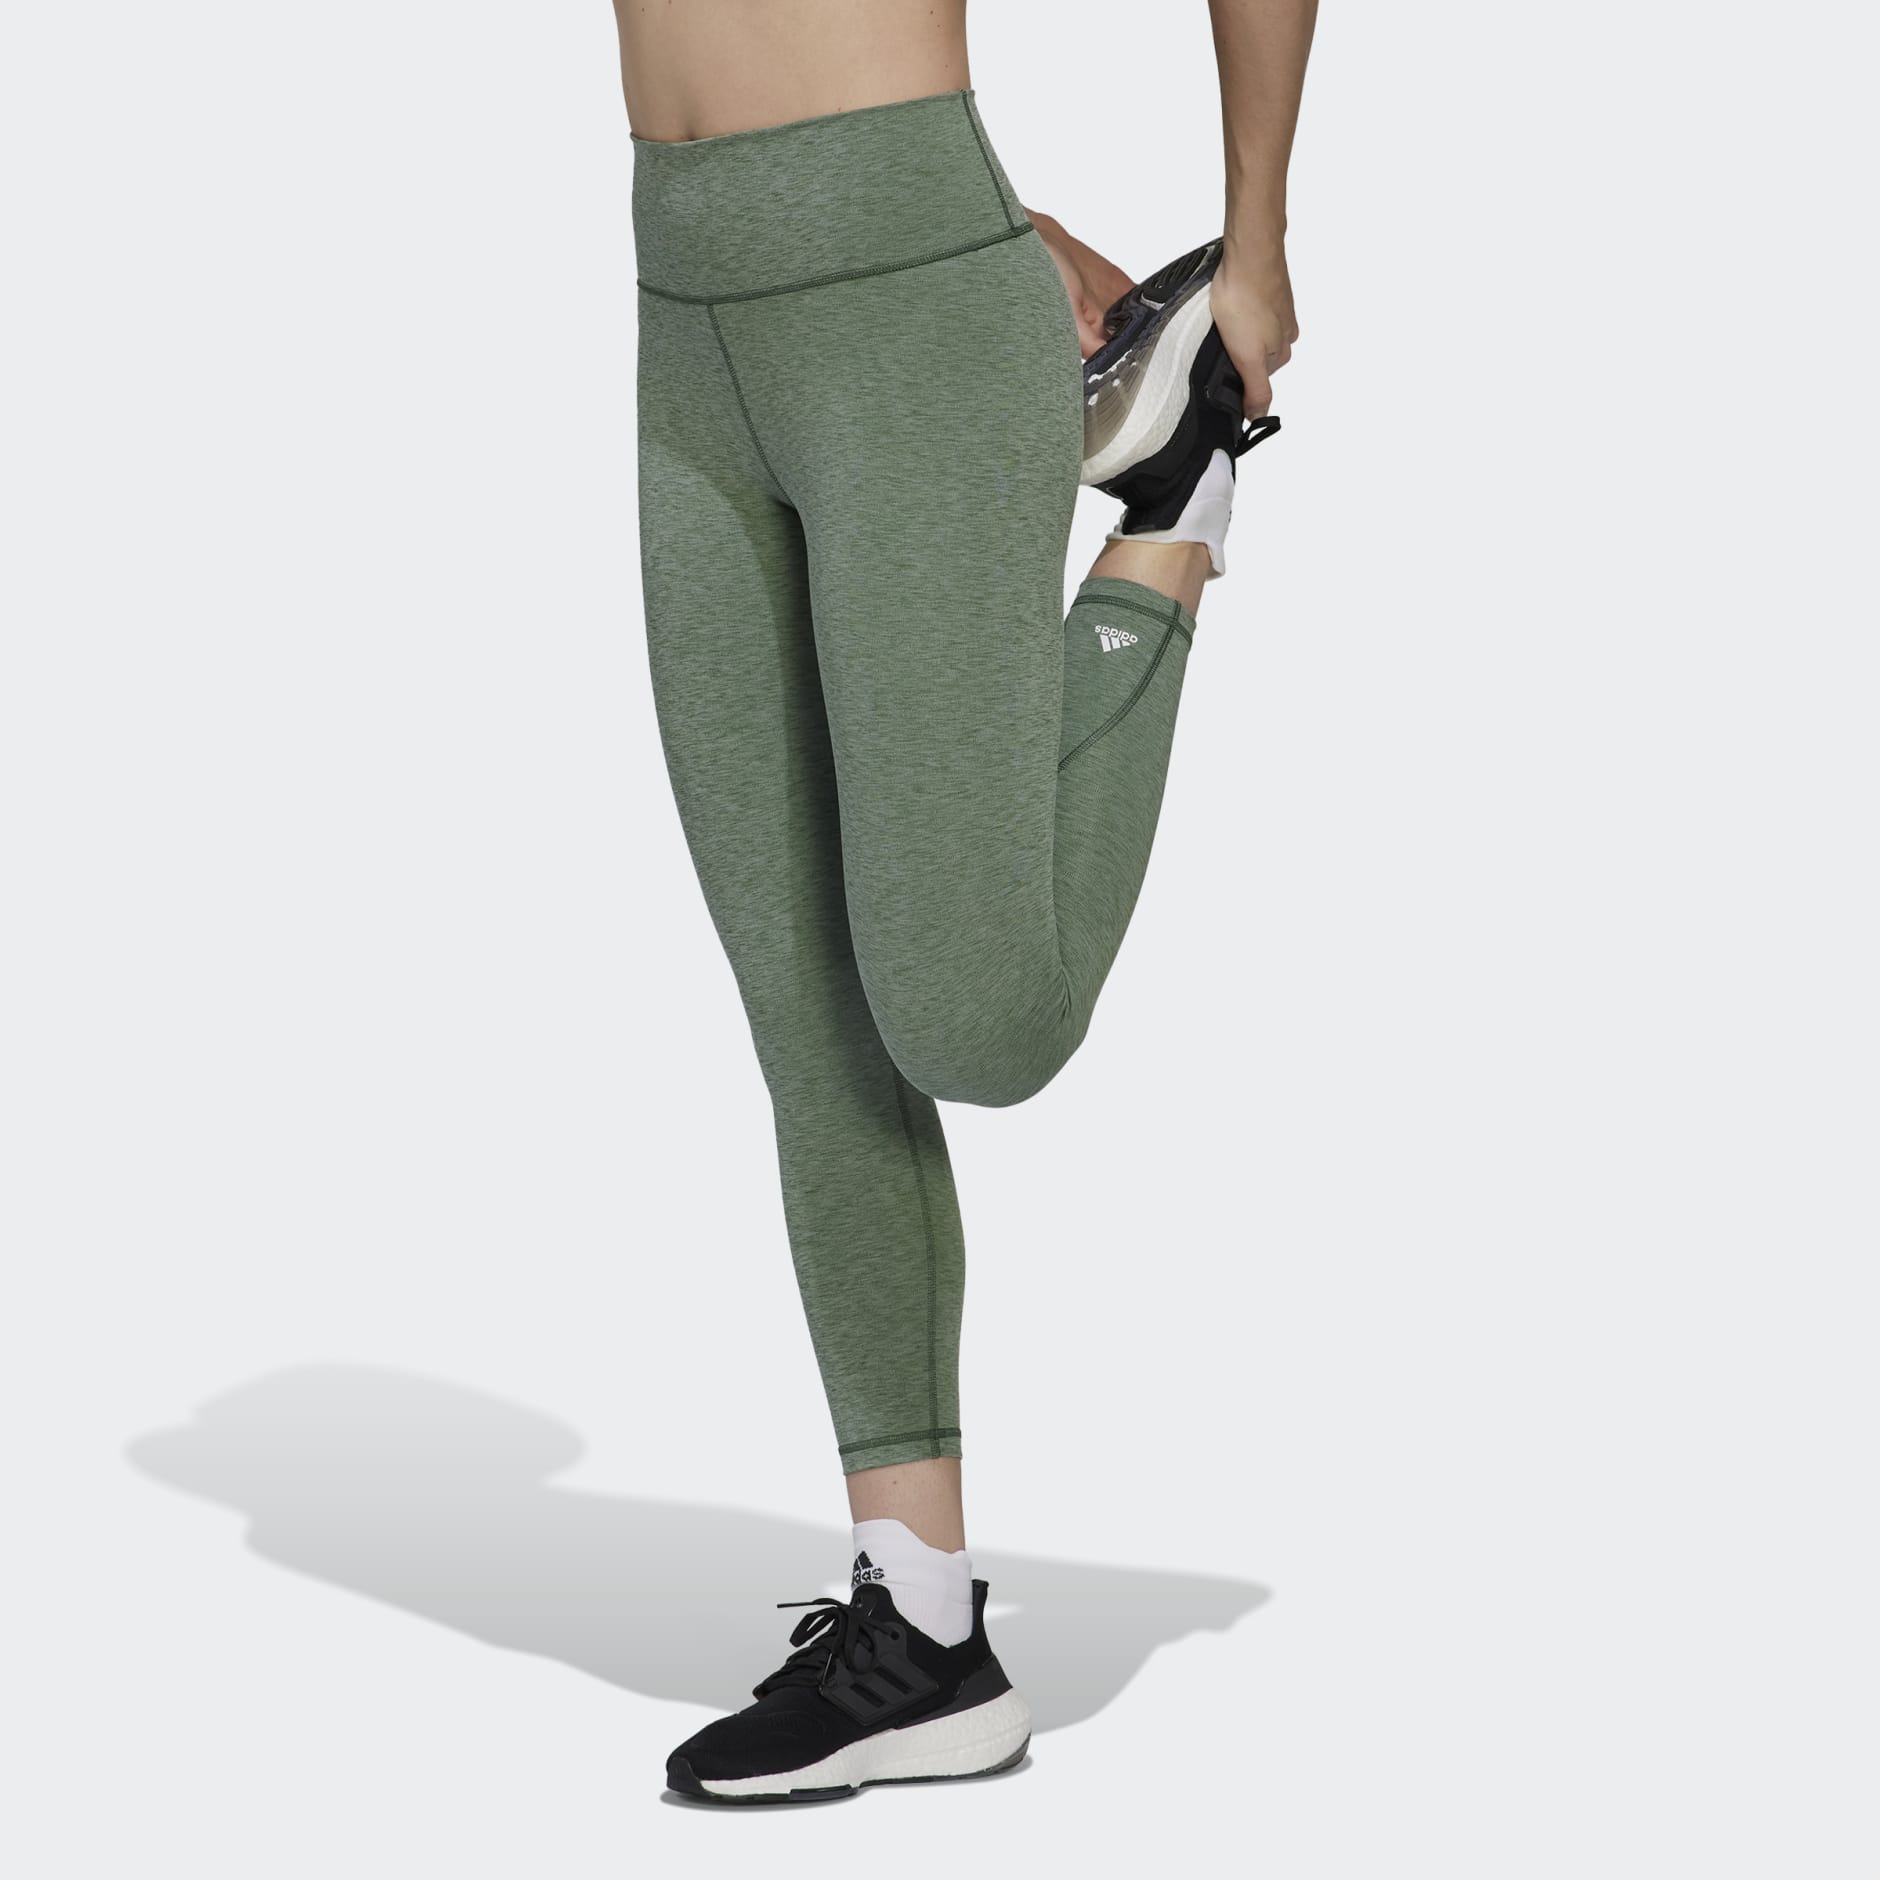 Adidas Leggings Women Small Green Aeroready Compression Yoga Gym